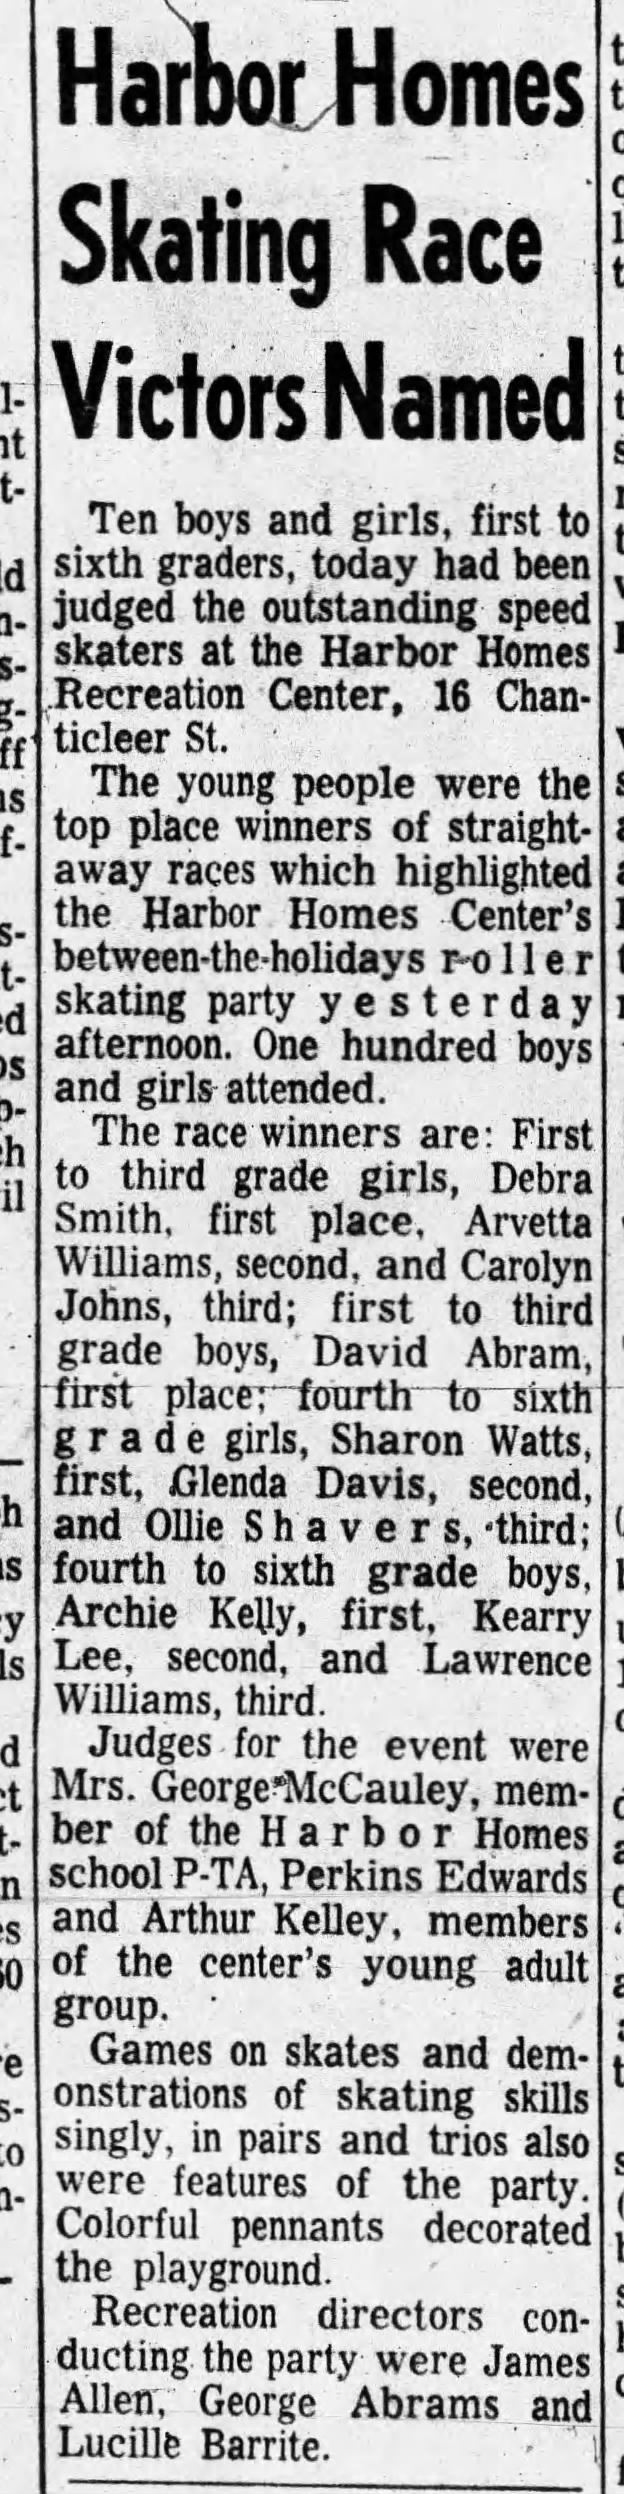 Harbor Homes Skating Race Victors Named - Dec 29, 1960